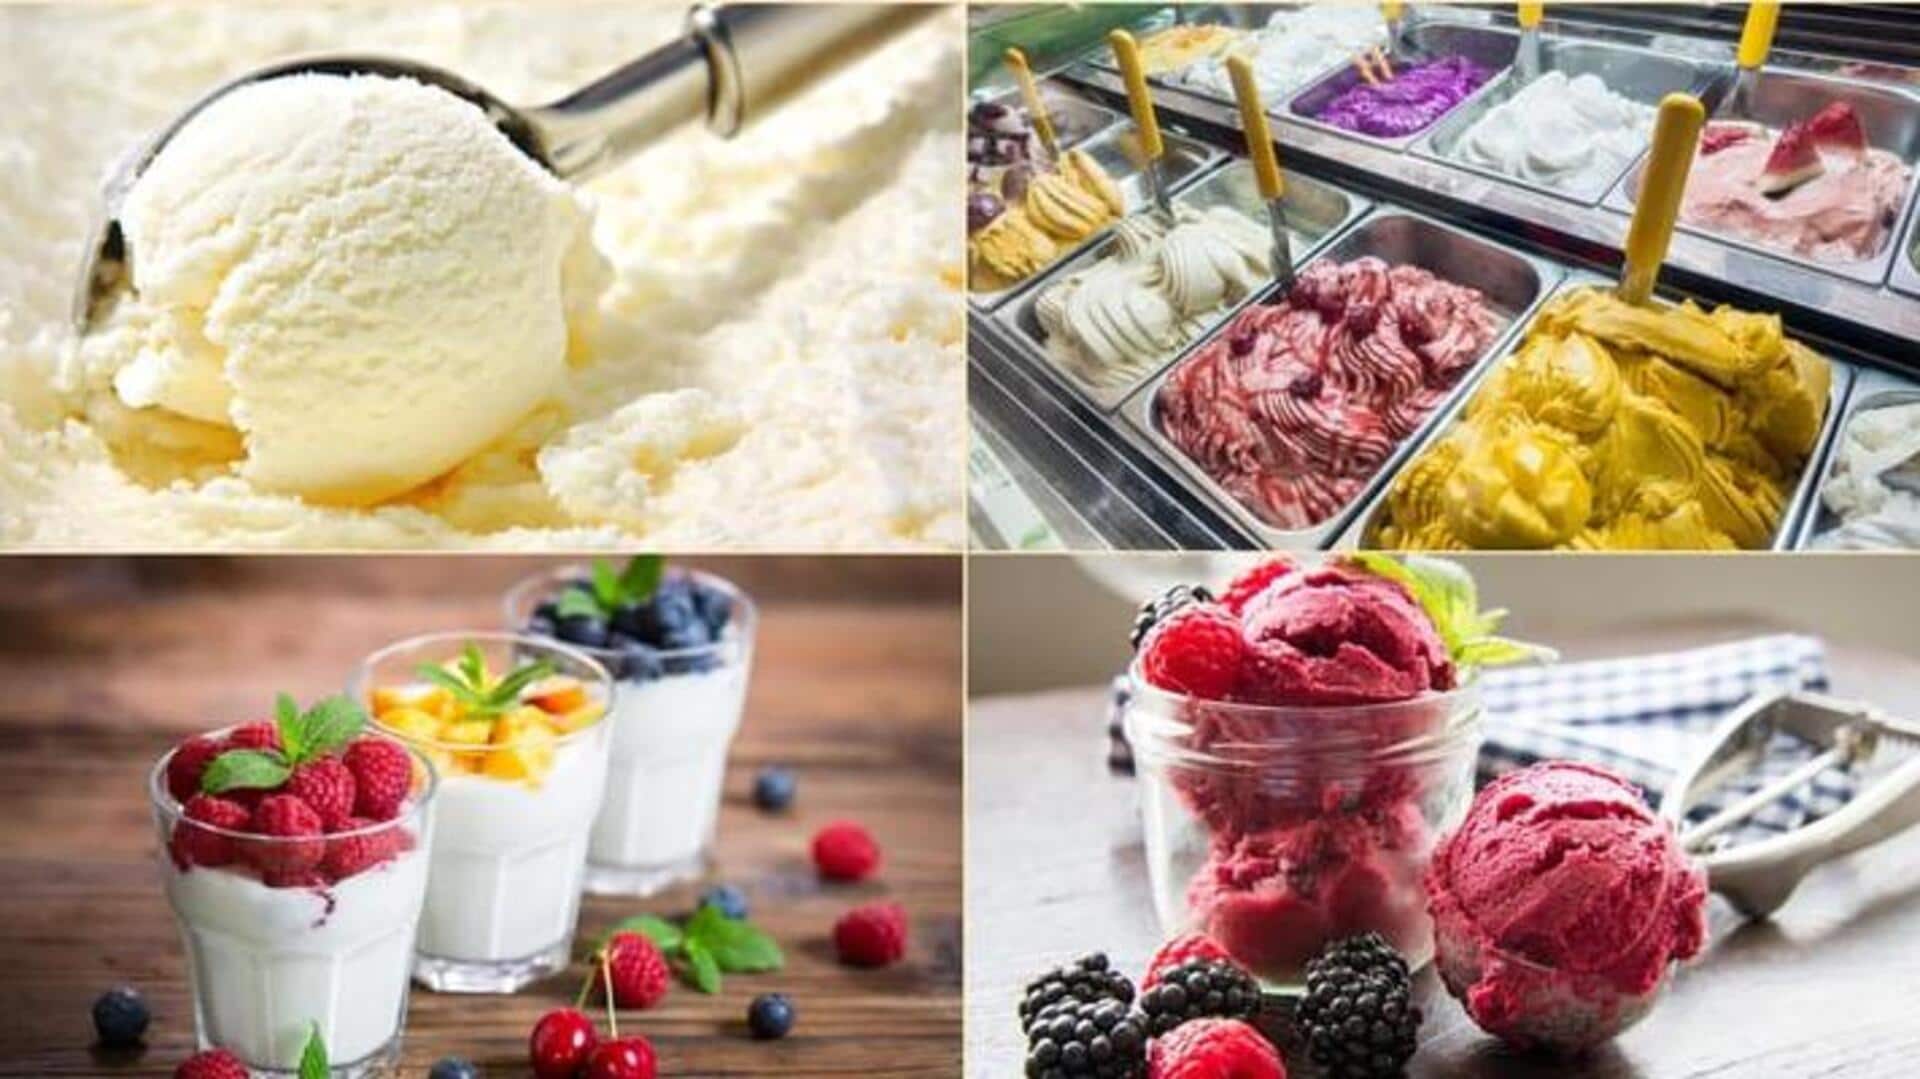 आइसक्रीम, जिलेटो, सॉरबट और फ्रोजन योगर्ट में क्या होता है अंतर?